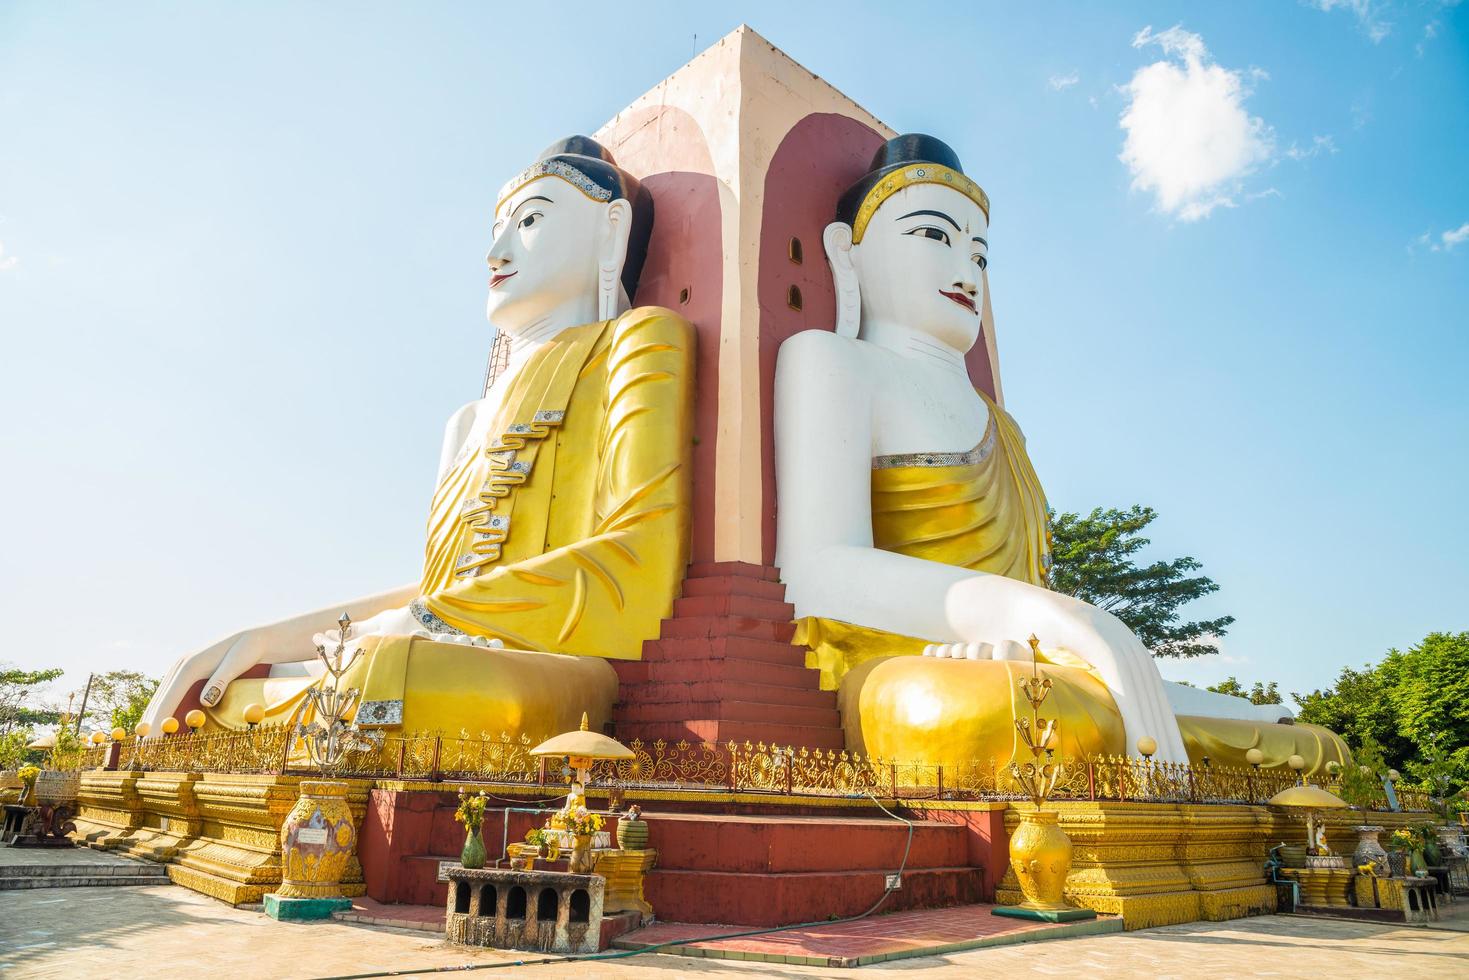 kyaik pun pagoda la imagen de cuatro grandes buda sentados espalda con espalda, uno de los lugares de atracción turística en bago, myanmar. foto